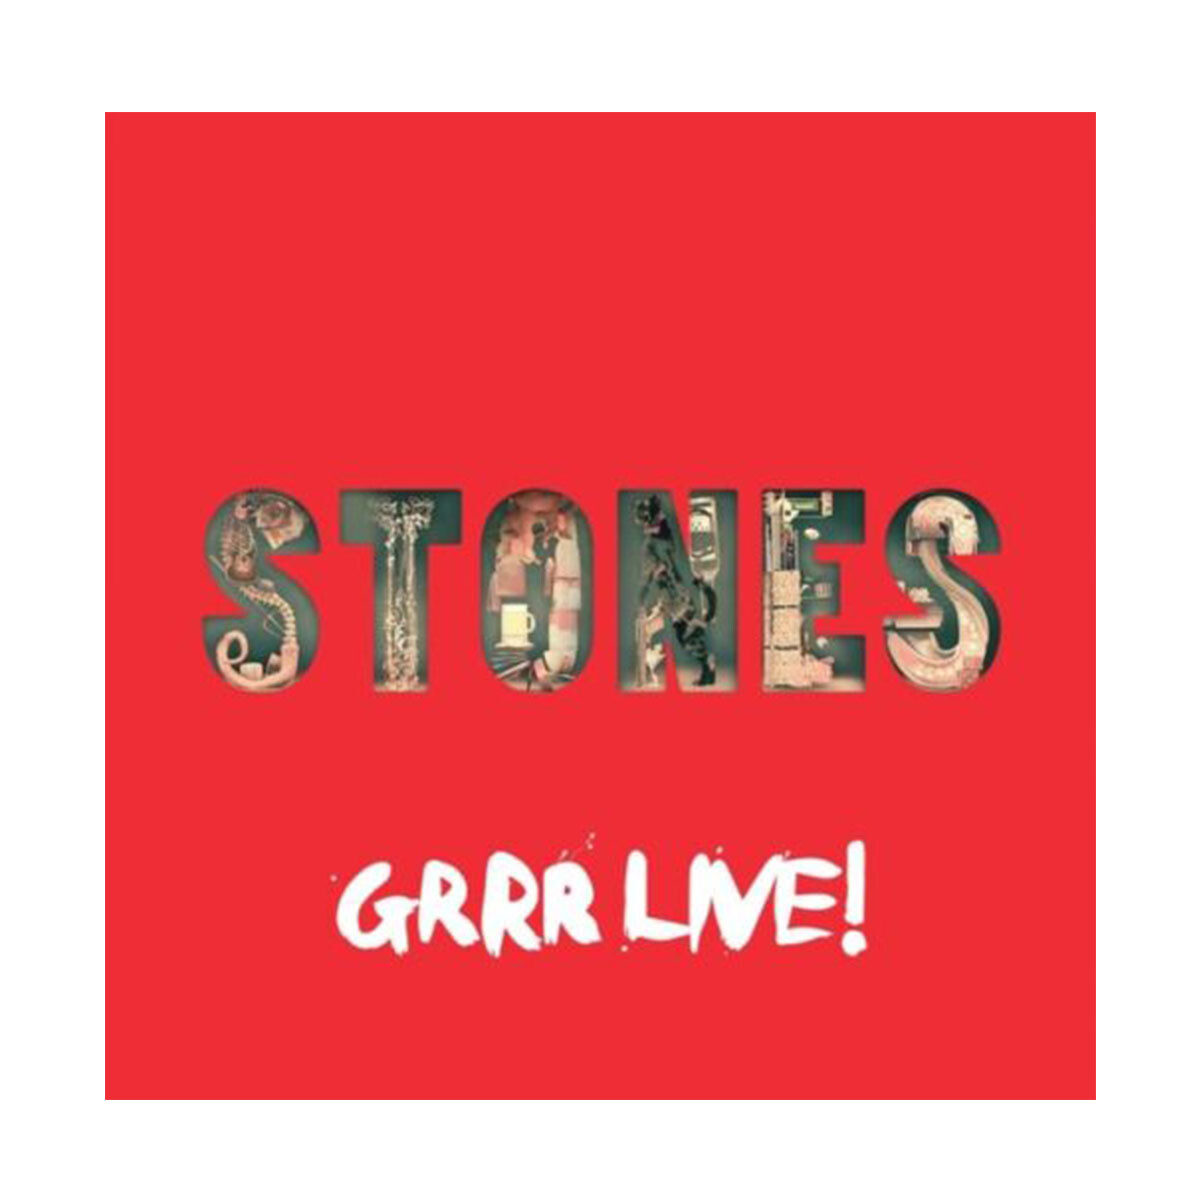 Rolling Stones / Grrr Live! - Lp - Vinilo 